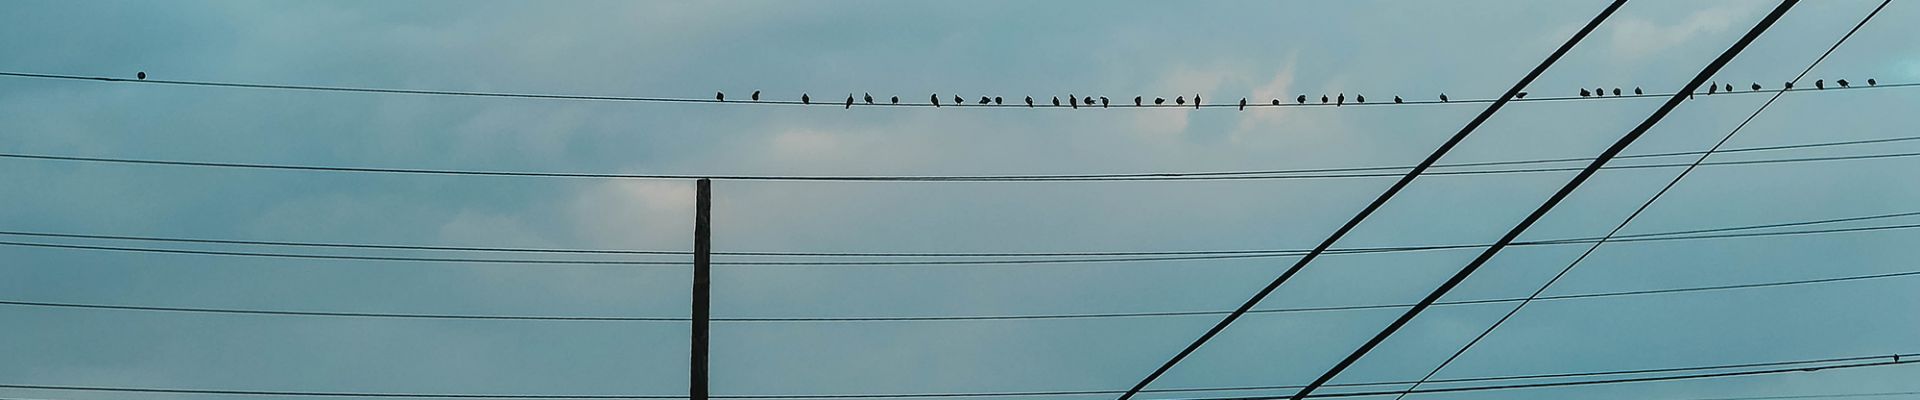 Comunicación de mercado - Pájaros en la línea eléctrica